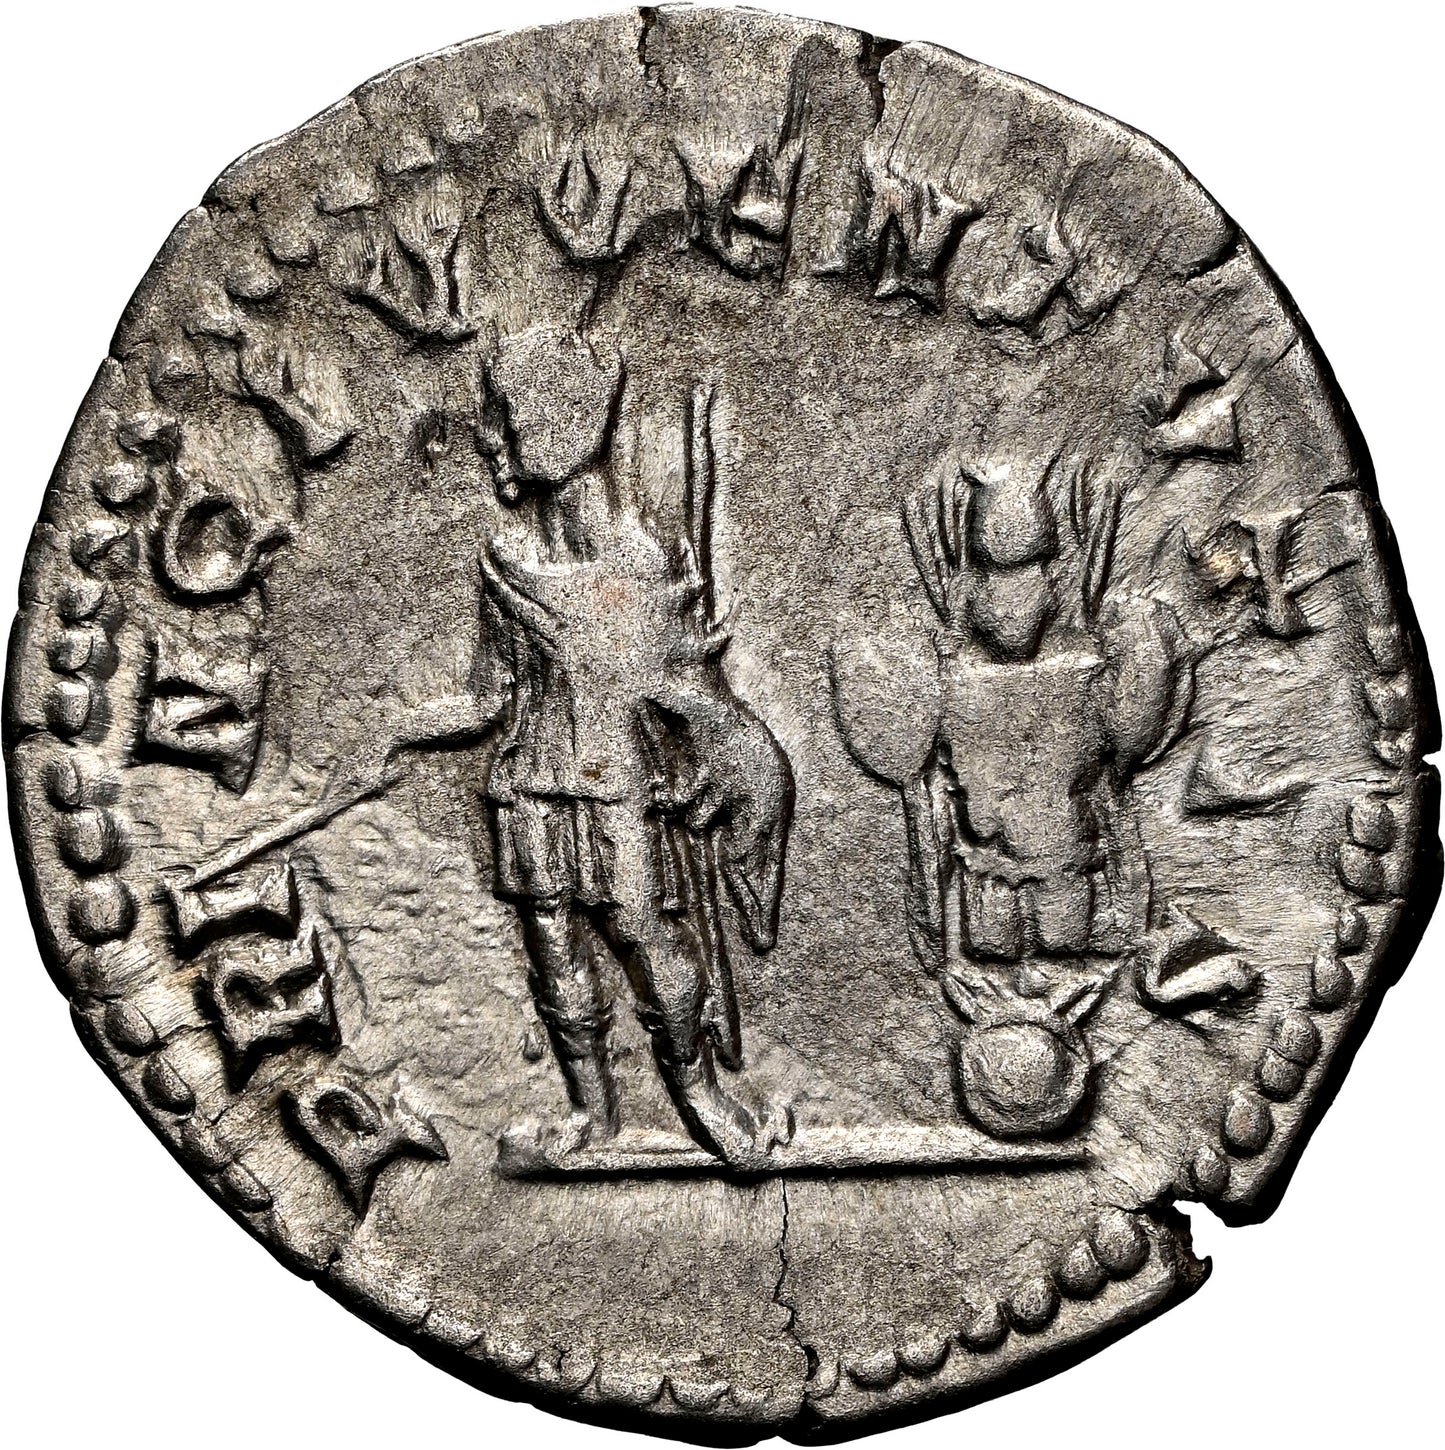 Roman Empire - Geta - Silver Denarius - NGC Ch VF